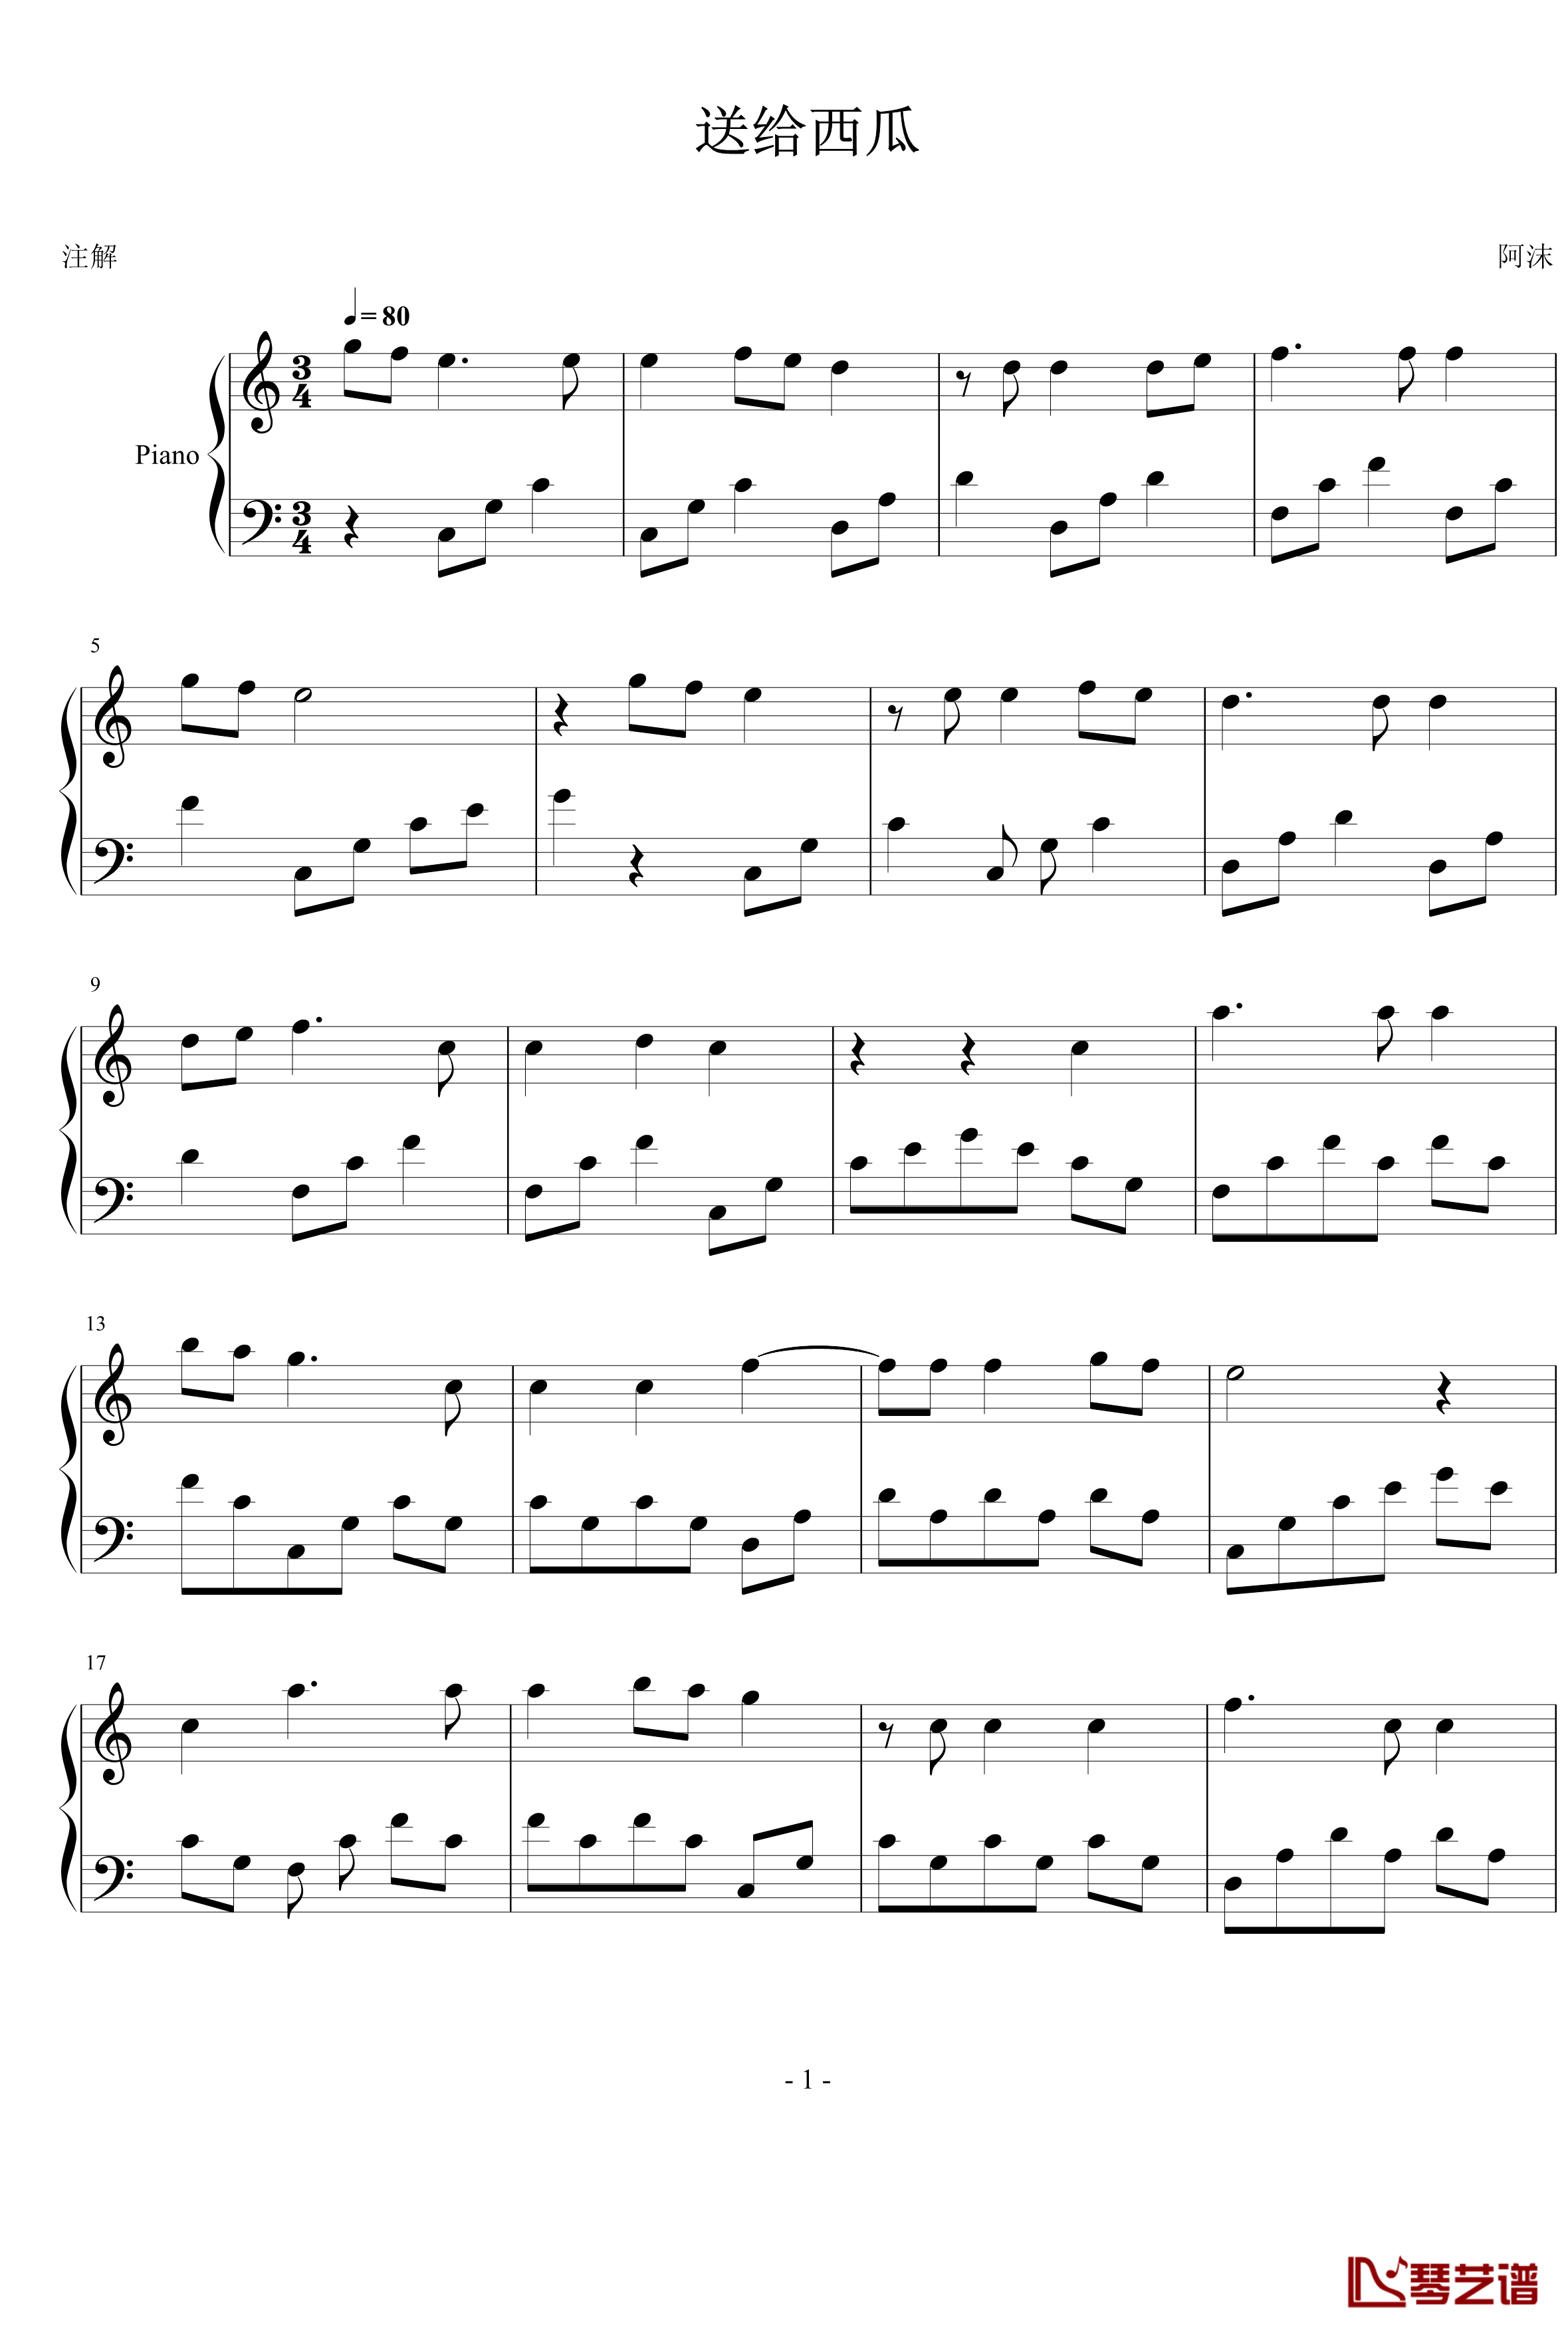 西瓜生日快乐钢琴谱-xxmm1111